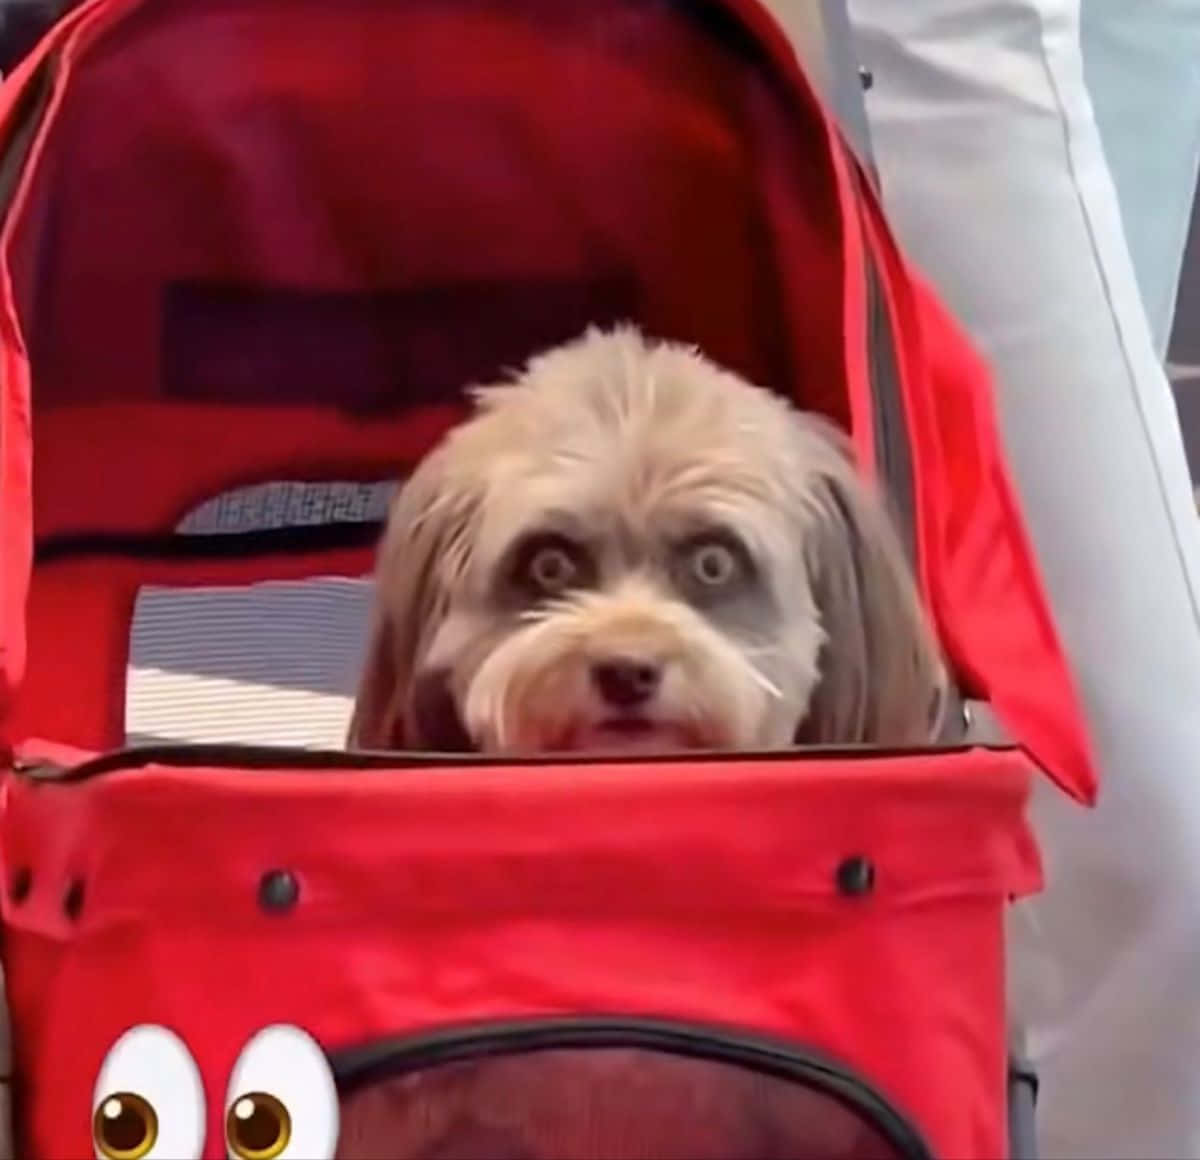 Lustigesfoto Eines Goofy Hundes Im Kinderwagen.